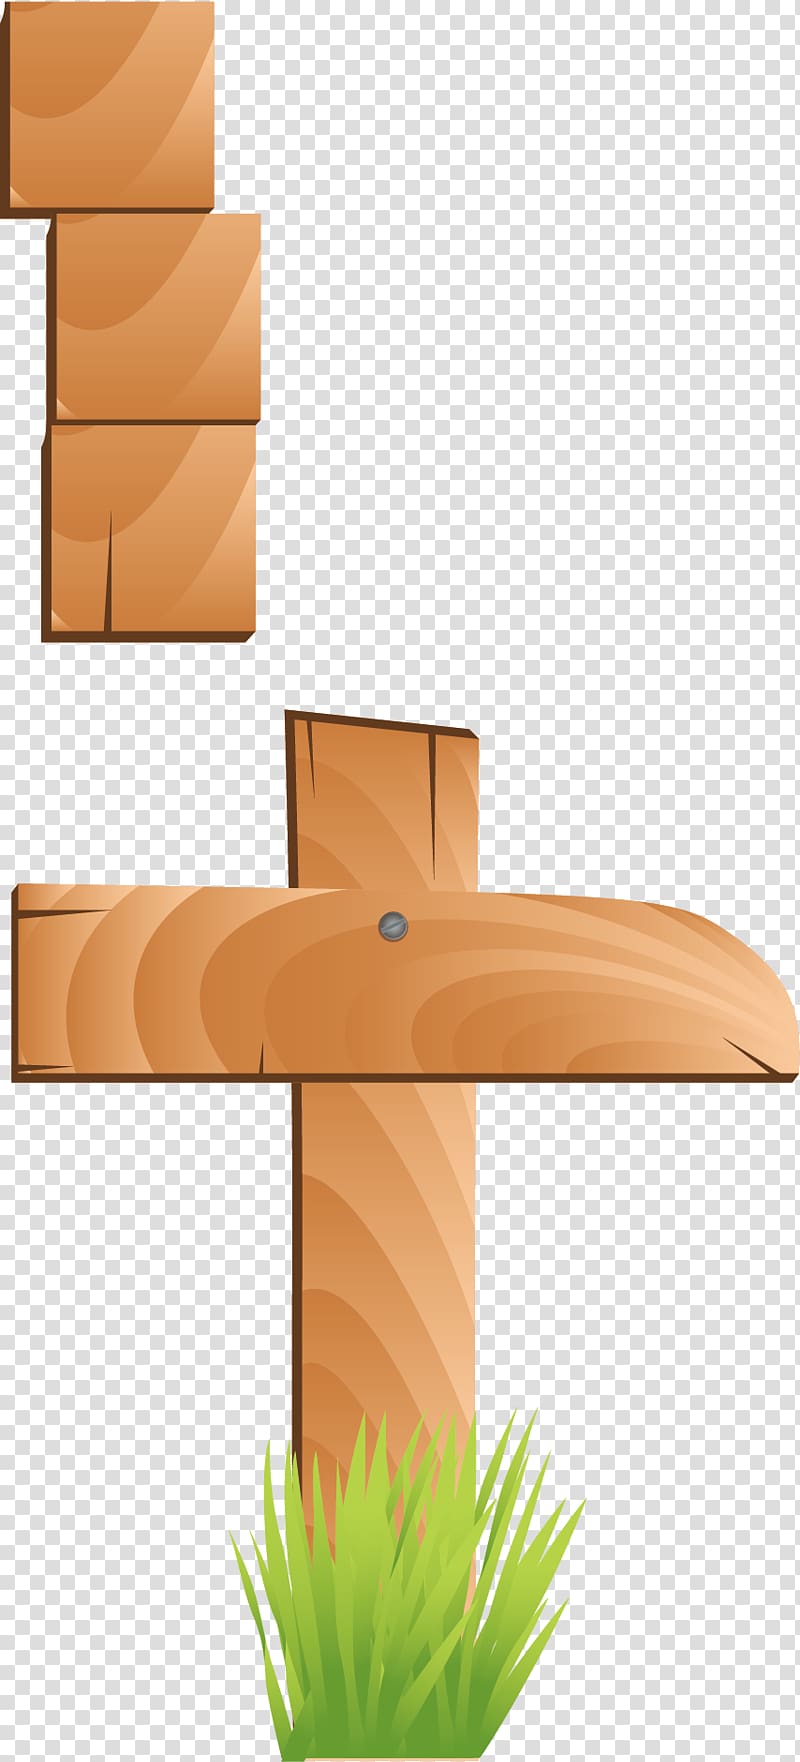 Euclidean Position Element, Wood grain position sign transparent background PNG clipart